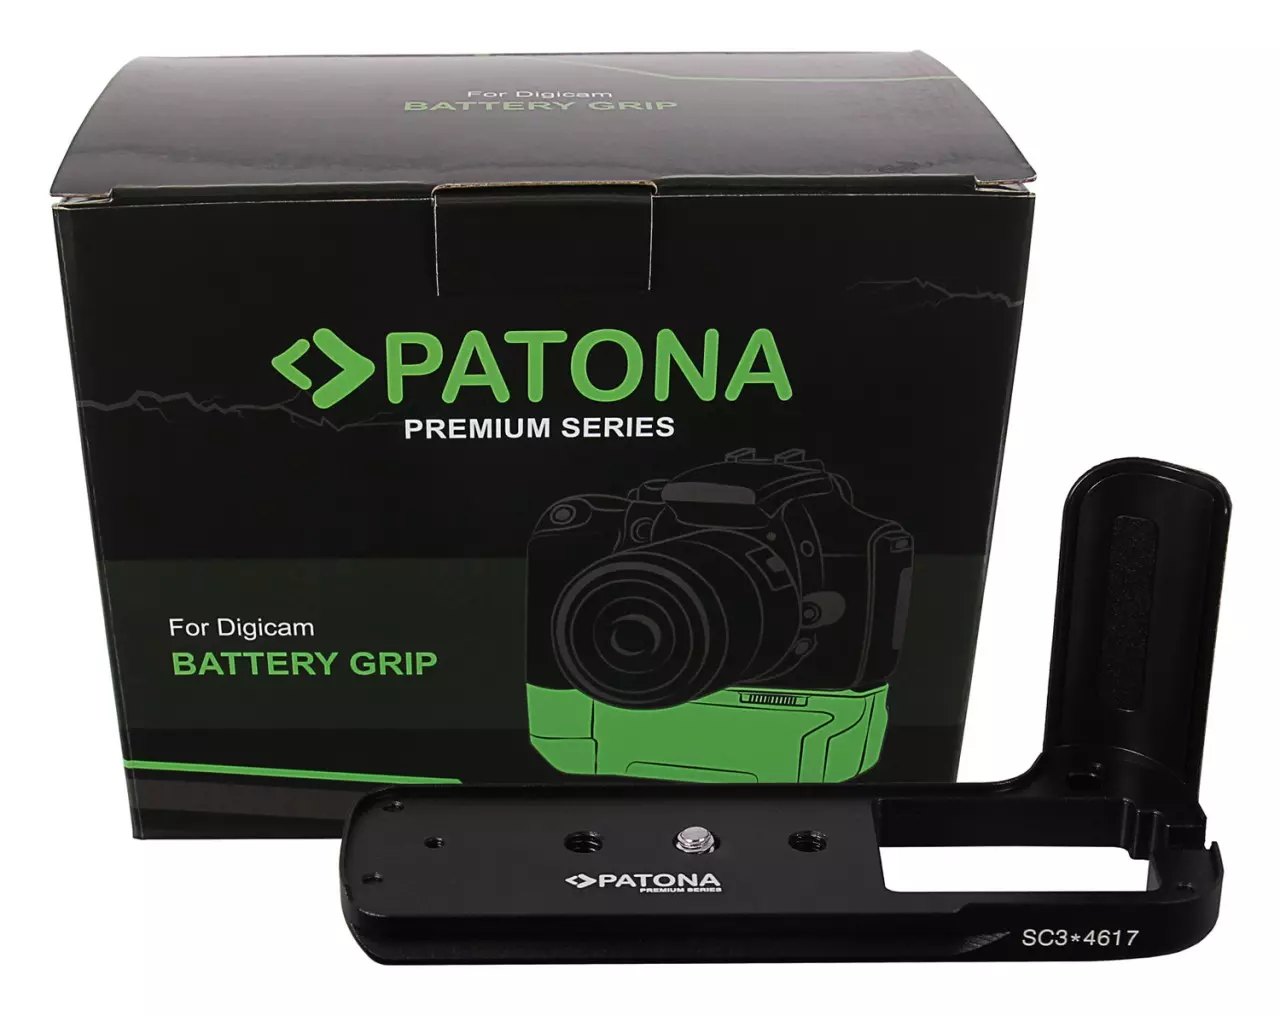 PATONA Premium Portrait Grip Fuji MHG-XT3 XT3 XT3 XT-3 f. Fujiilm X-T3 - Patona Premium